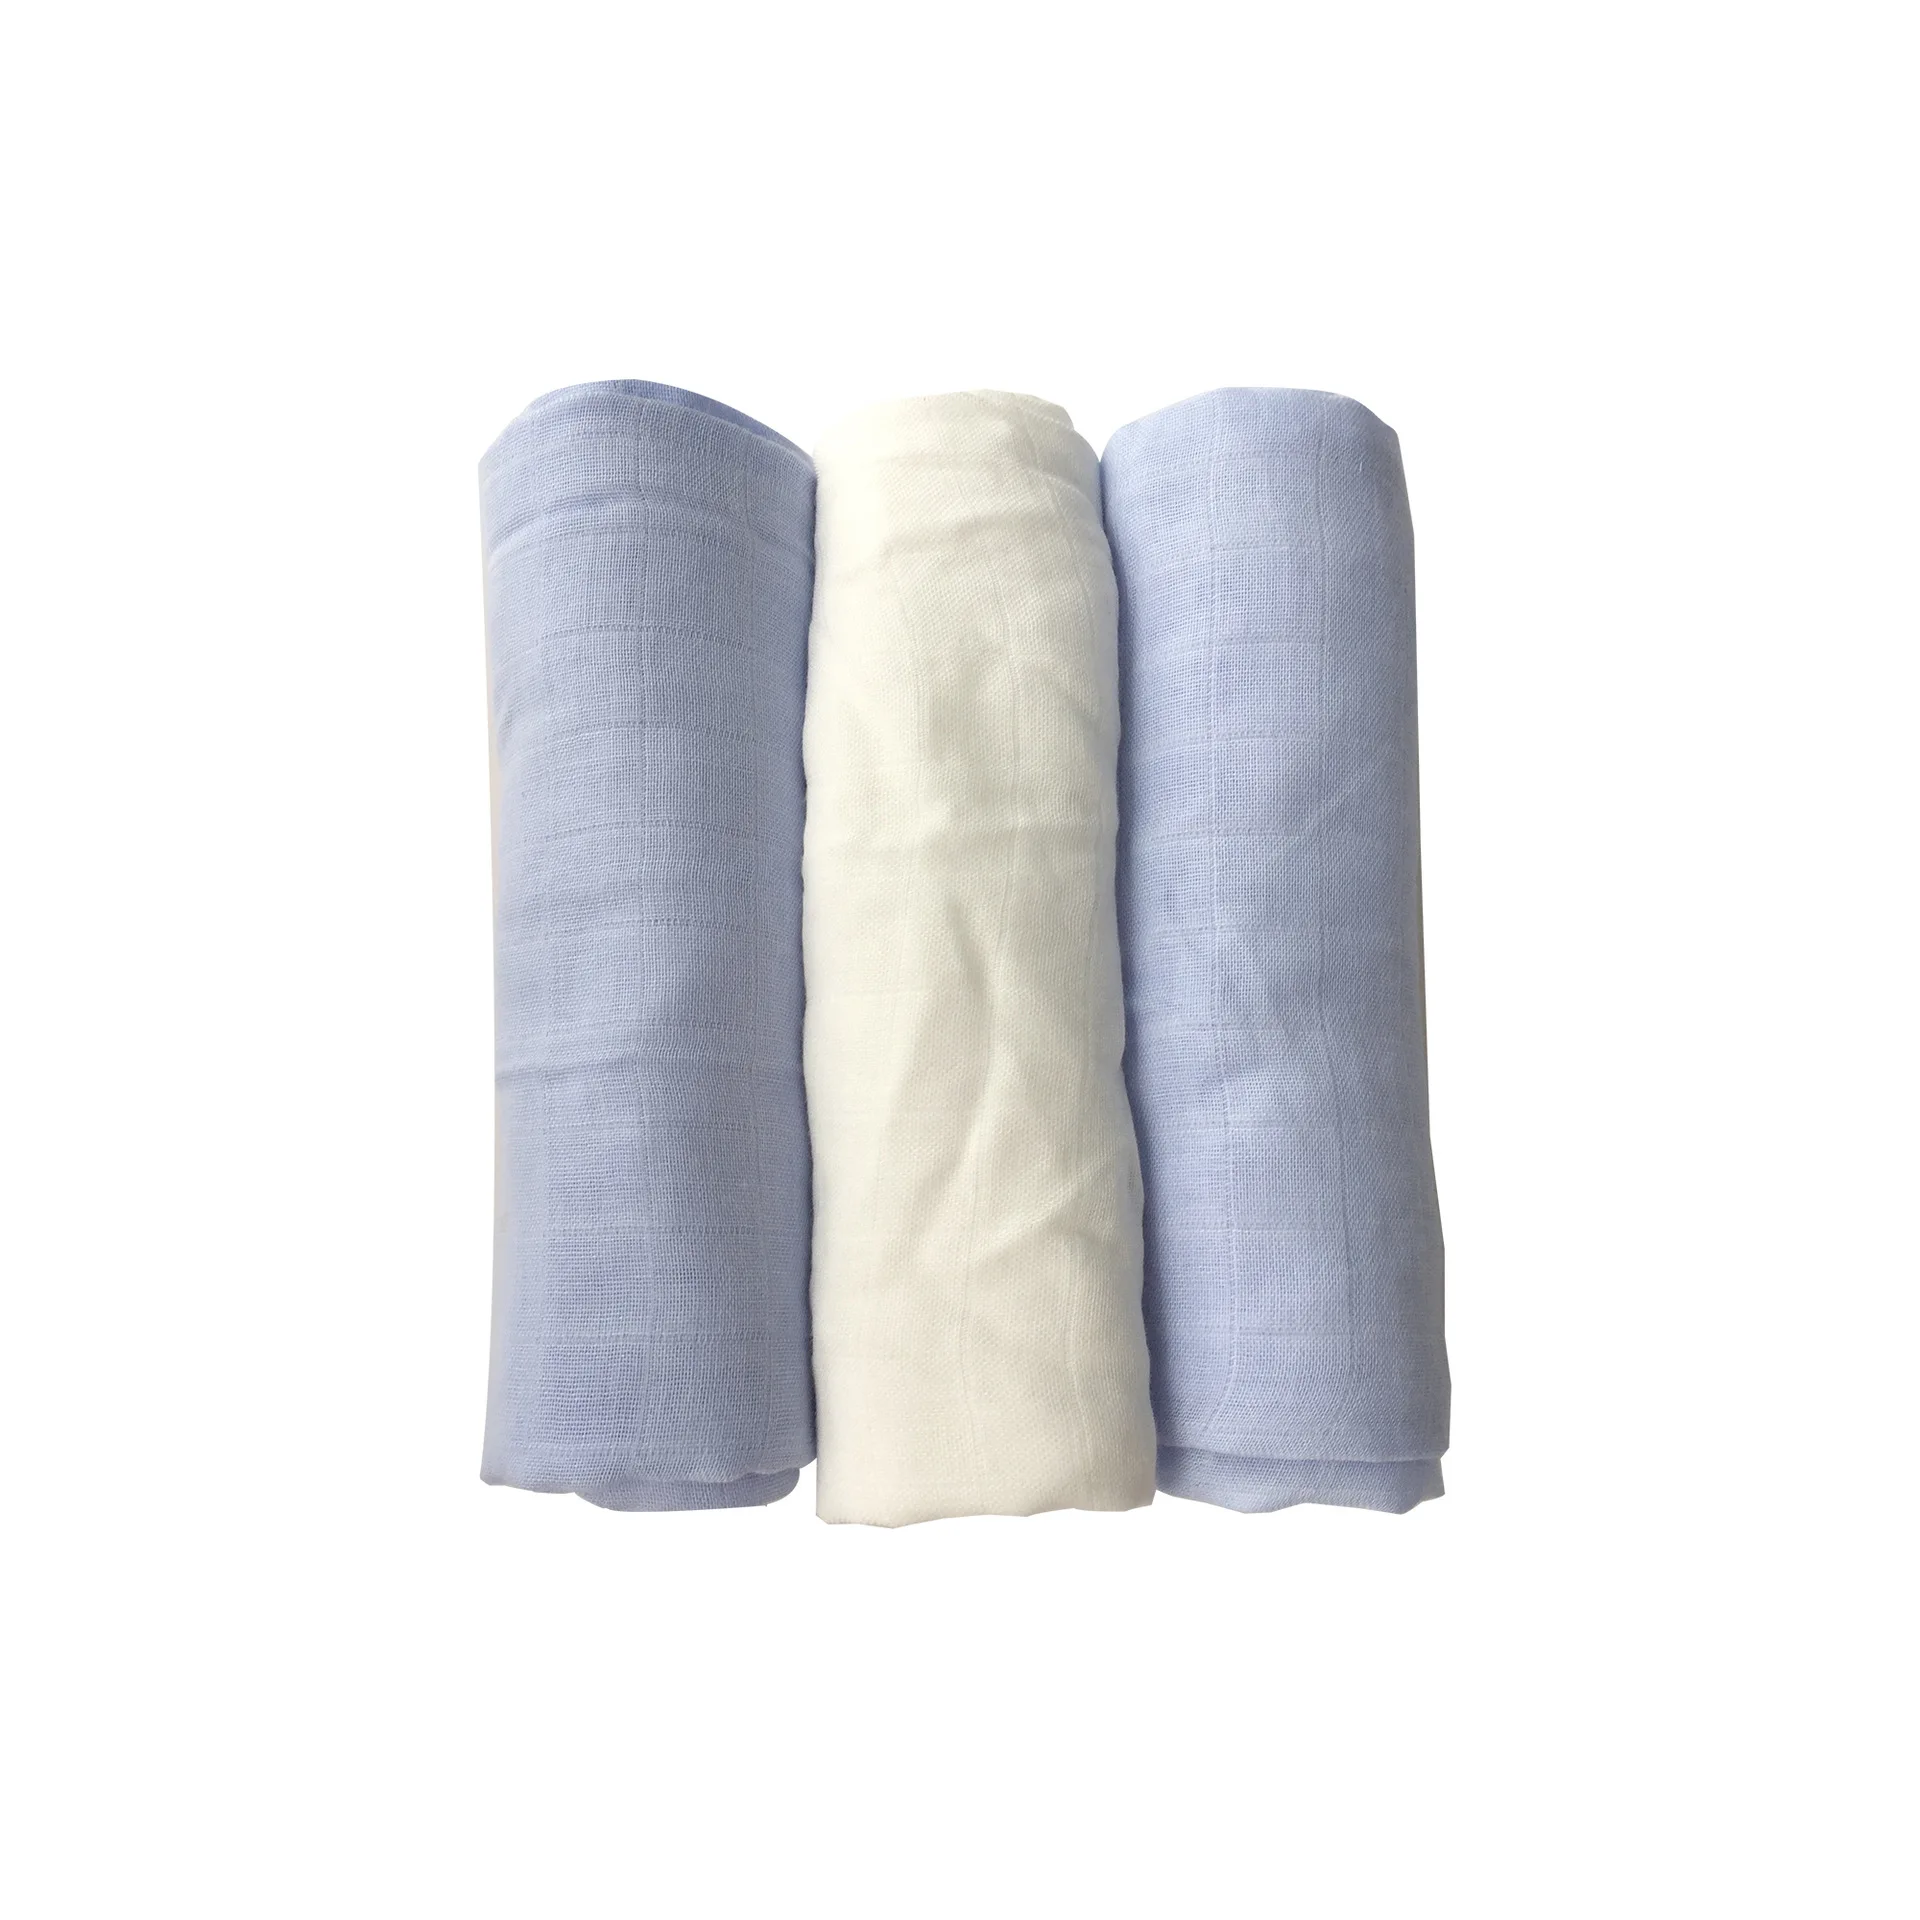 80*80 см 3 шт./кор. хлопок детские пеленки мягкие одеяла для новорожденных Ванна Марля младенческой спальные принадлежности чехол для коляски игровой коврик - Цвет: A